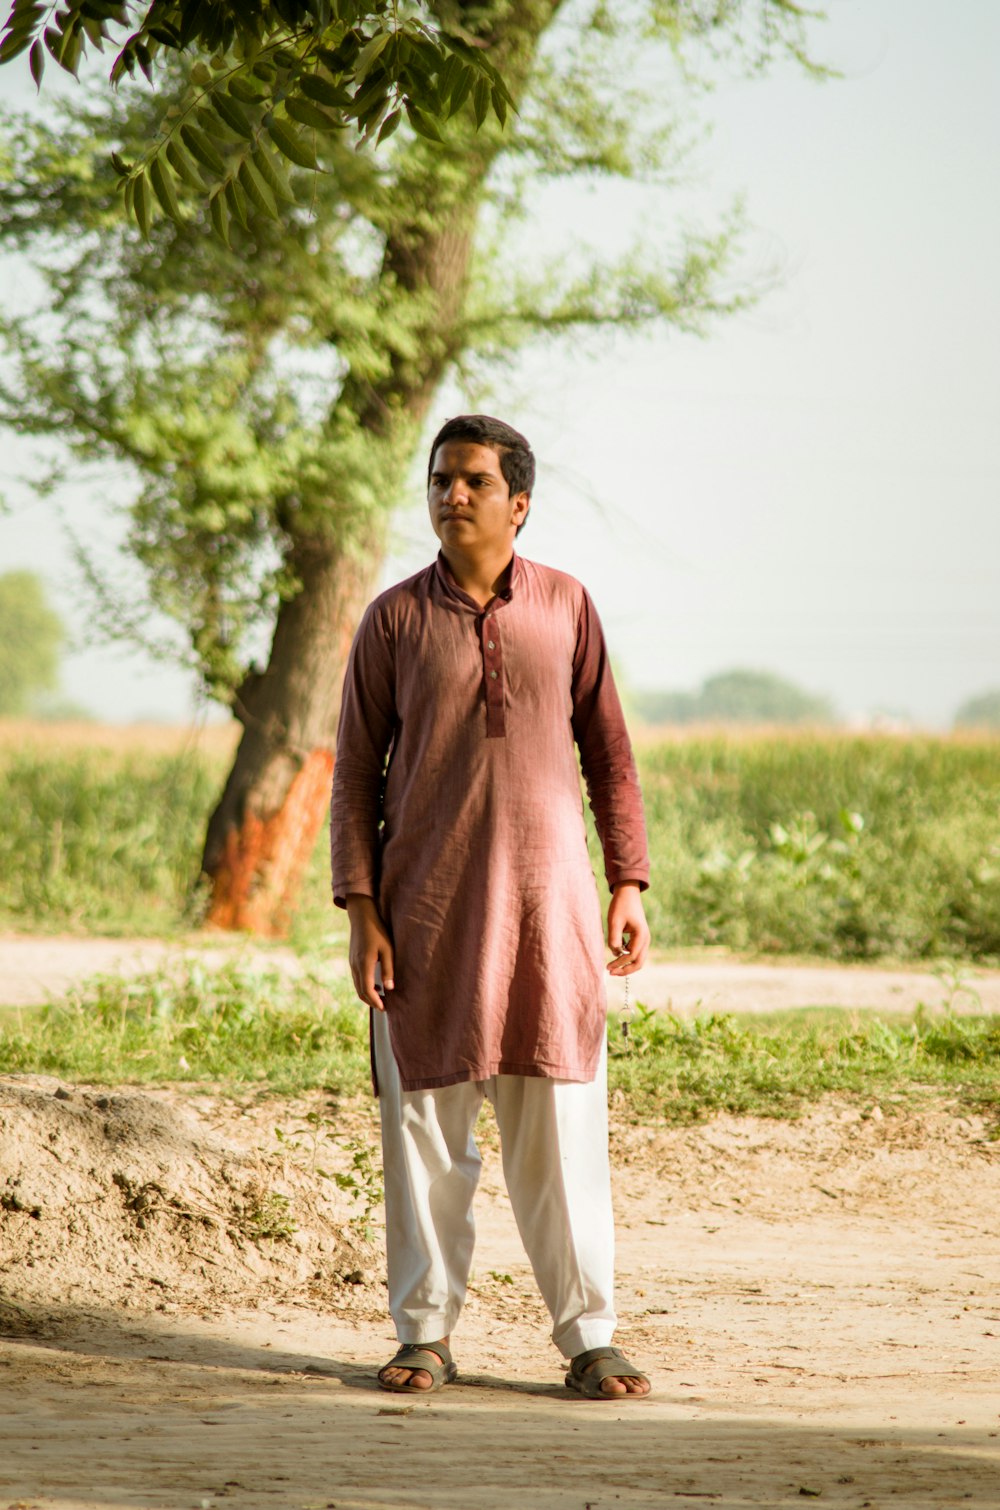 Foto hombre con camisa roja de larga y pantalón blanco parado en un marrón durante día – Imagen Pakistán gratis en Unsplash